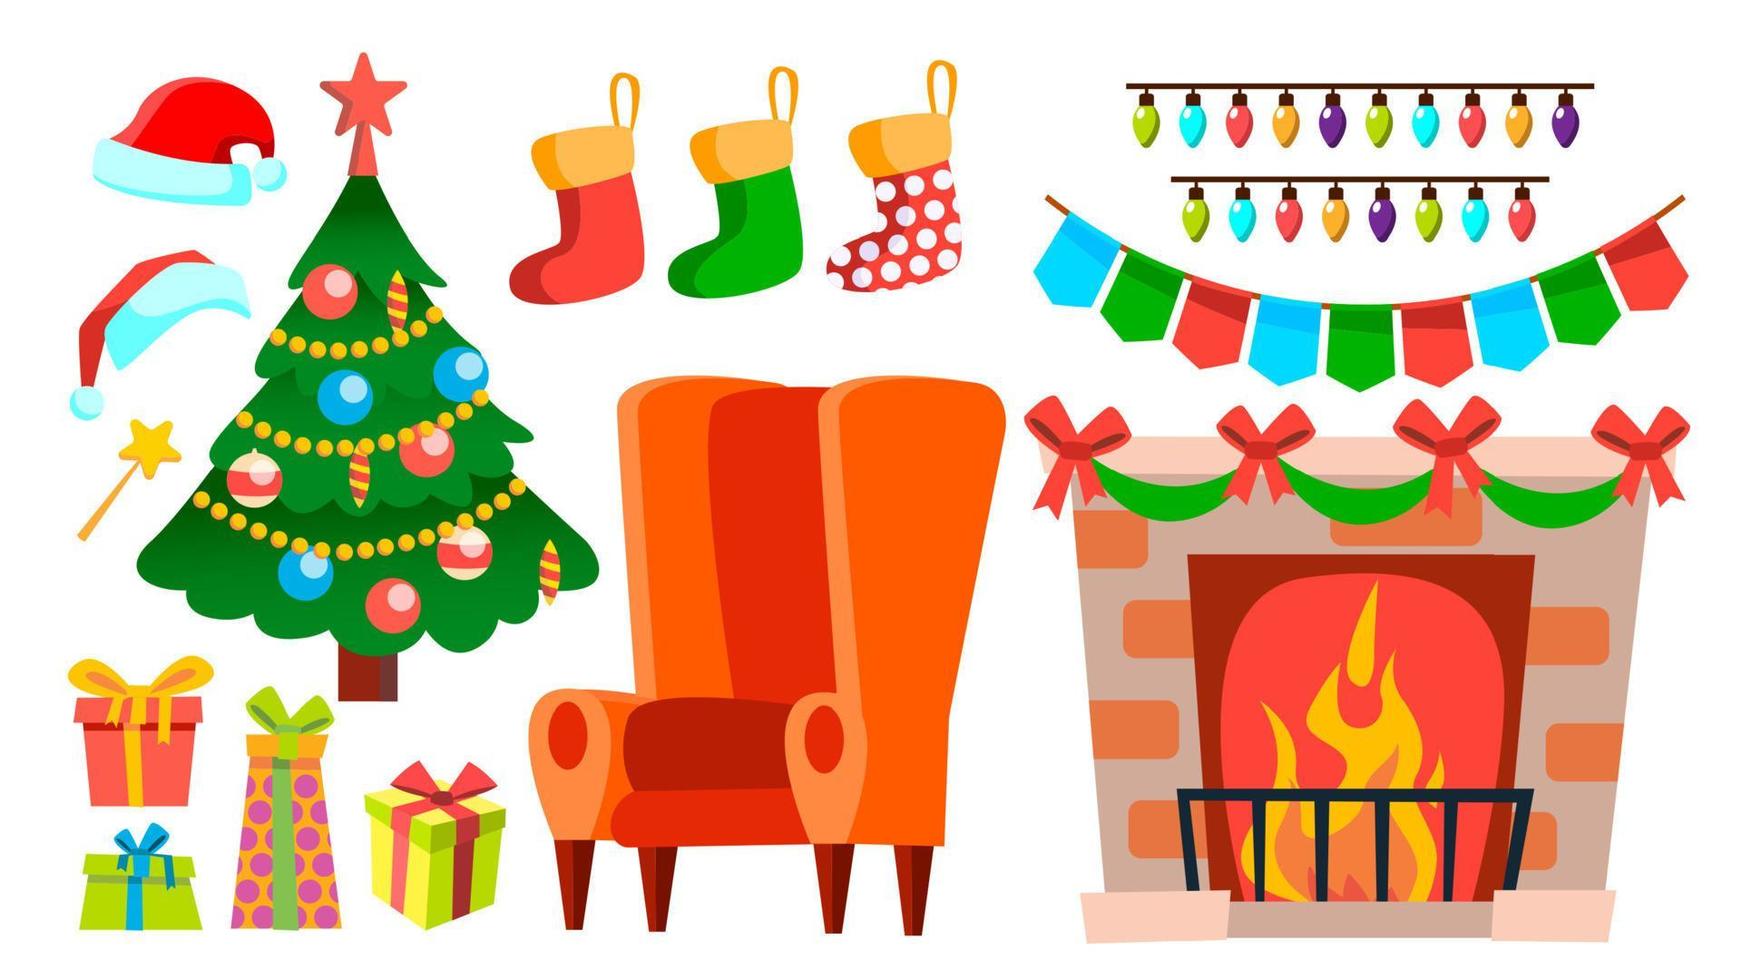 vetor de ícones de decoração de Natal. lareira, meia, cadeira, árvore de natal, presentes, luzes, chapéu. ilustração plana isolada dos desenhos animados